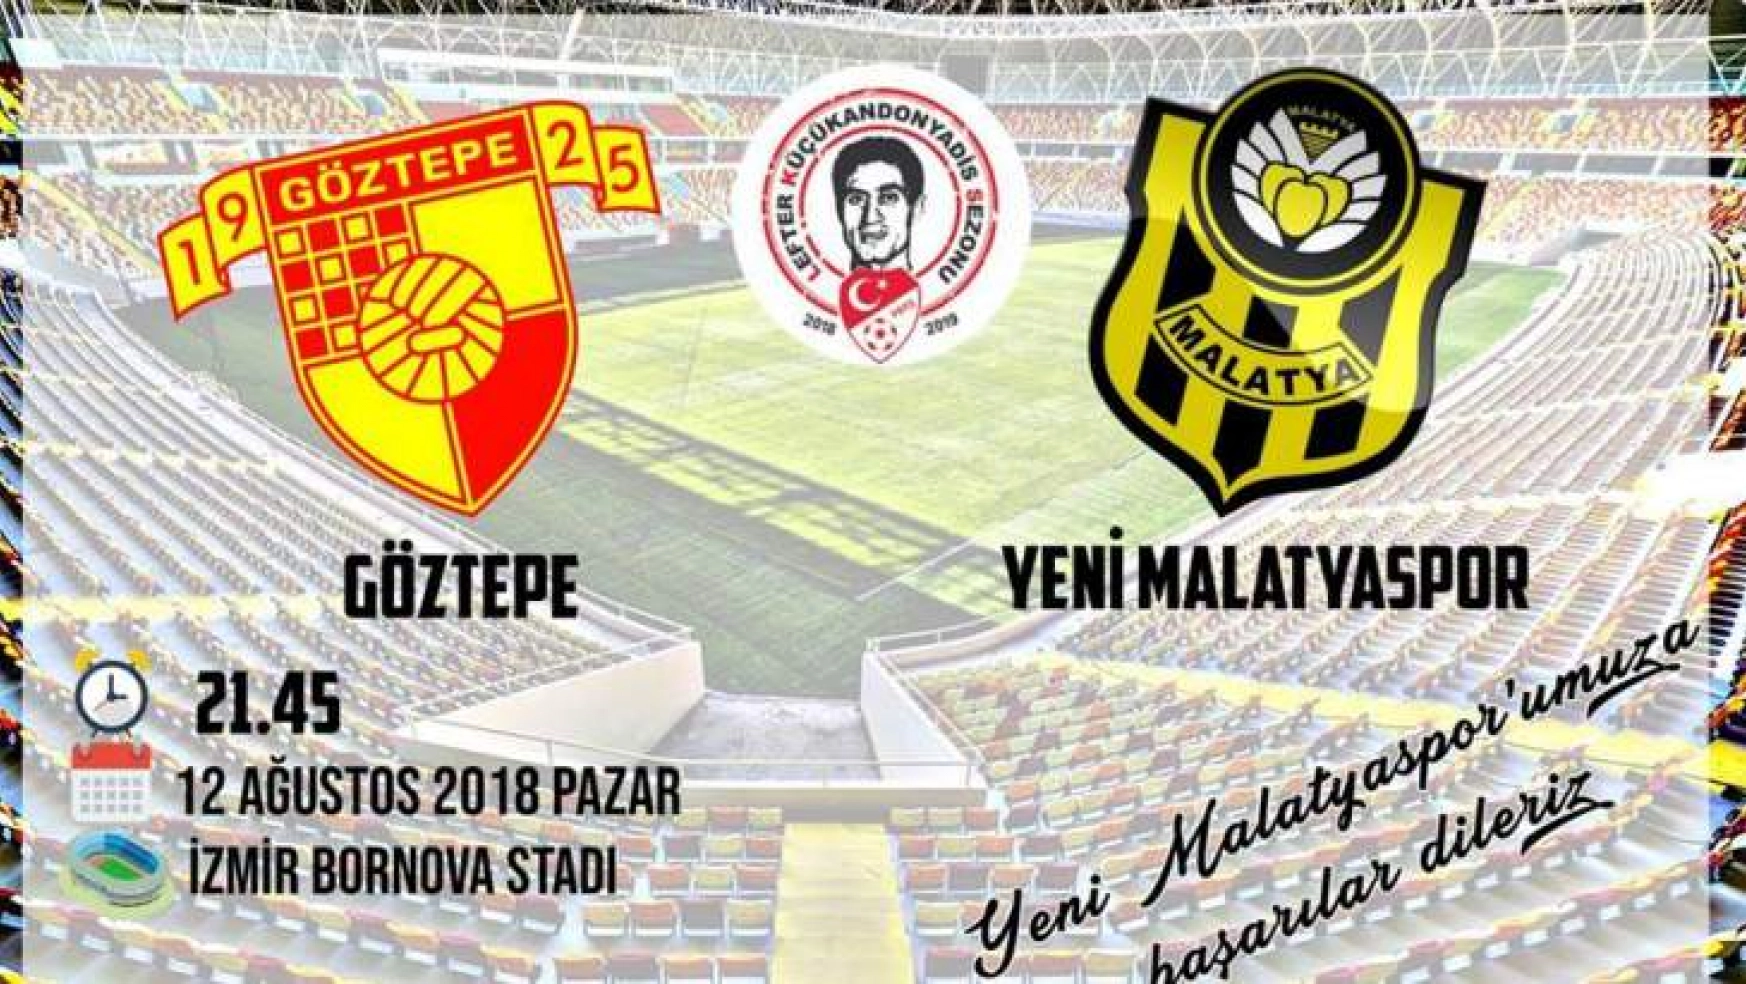 Yeni Malatyaspor, Göztepe'ye konuk olacak